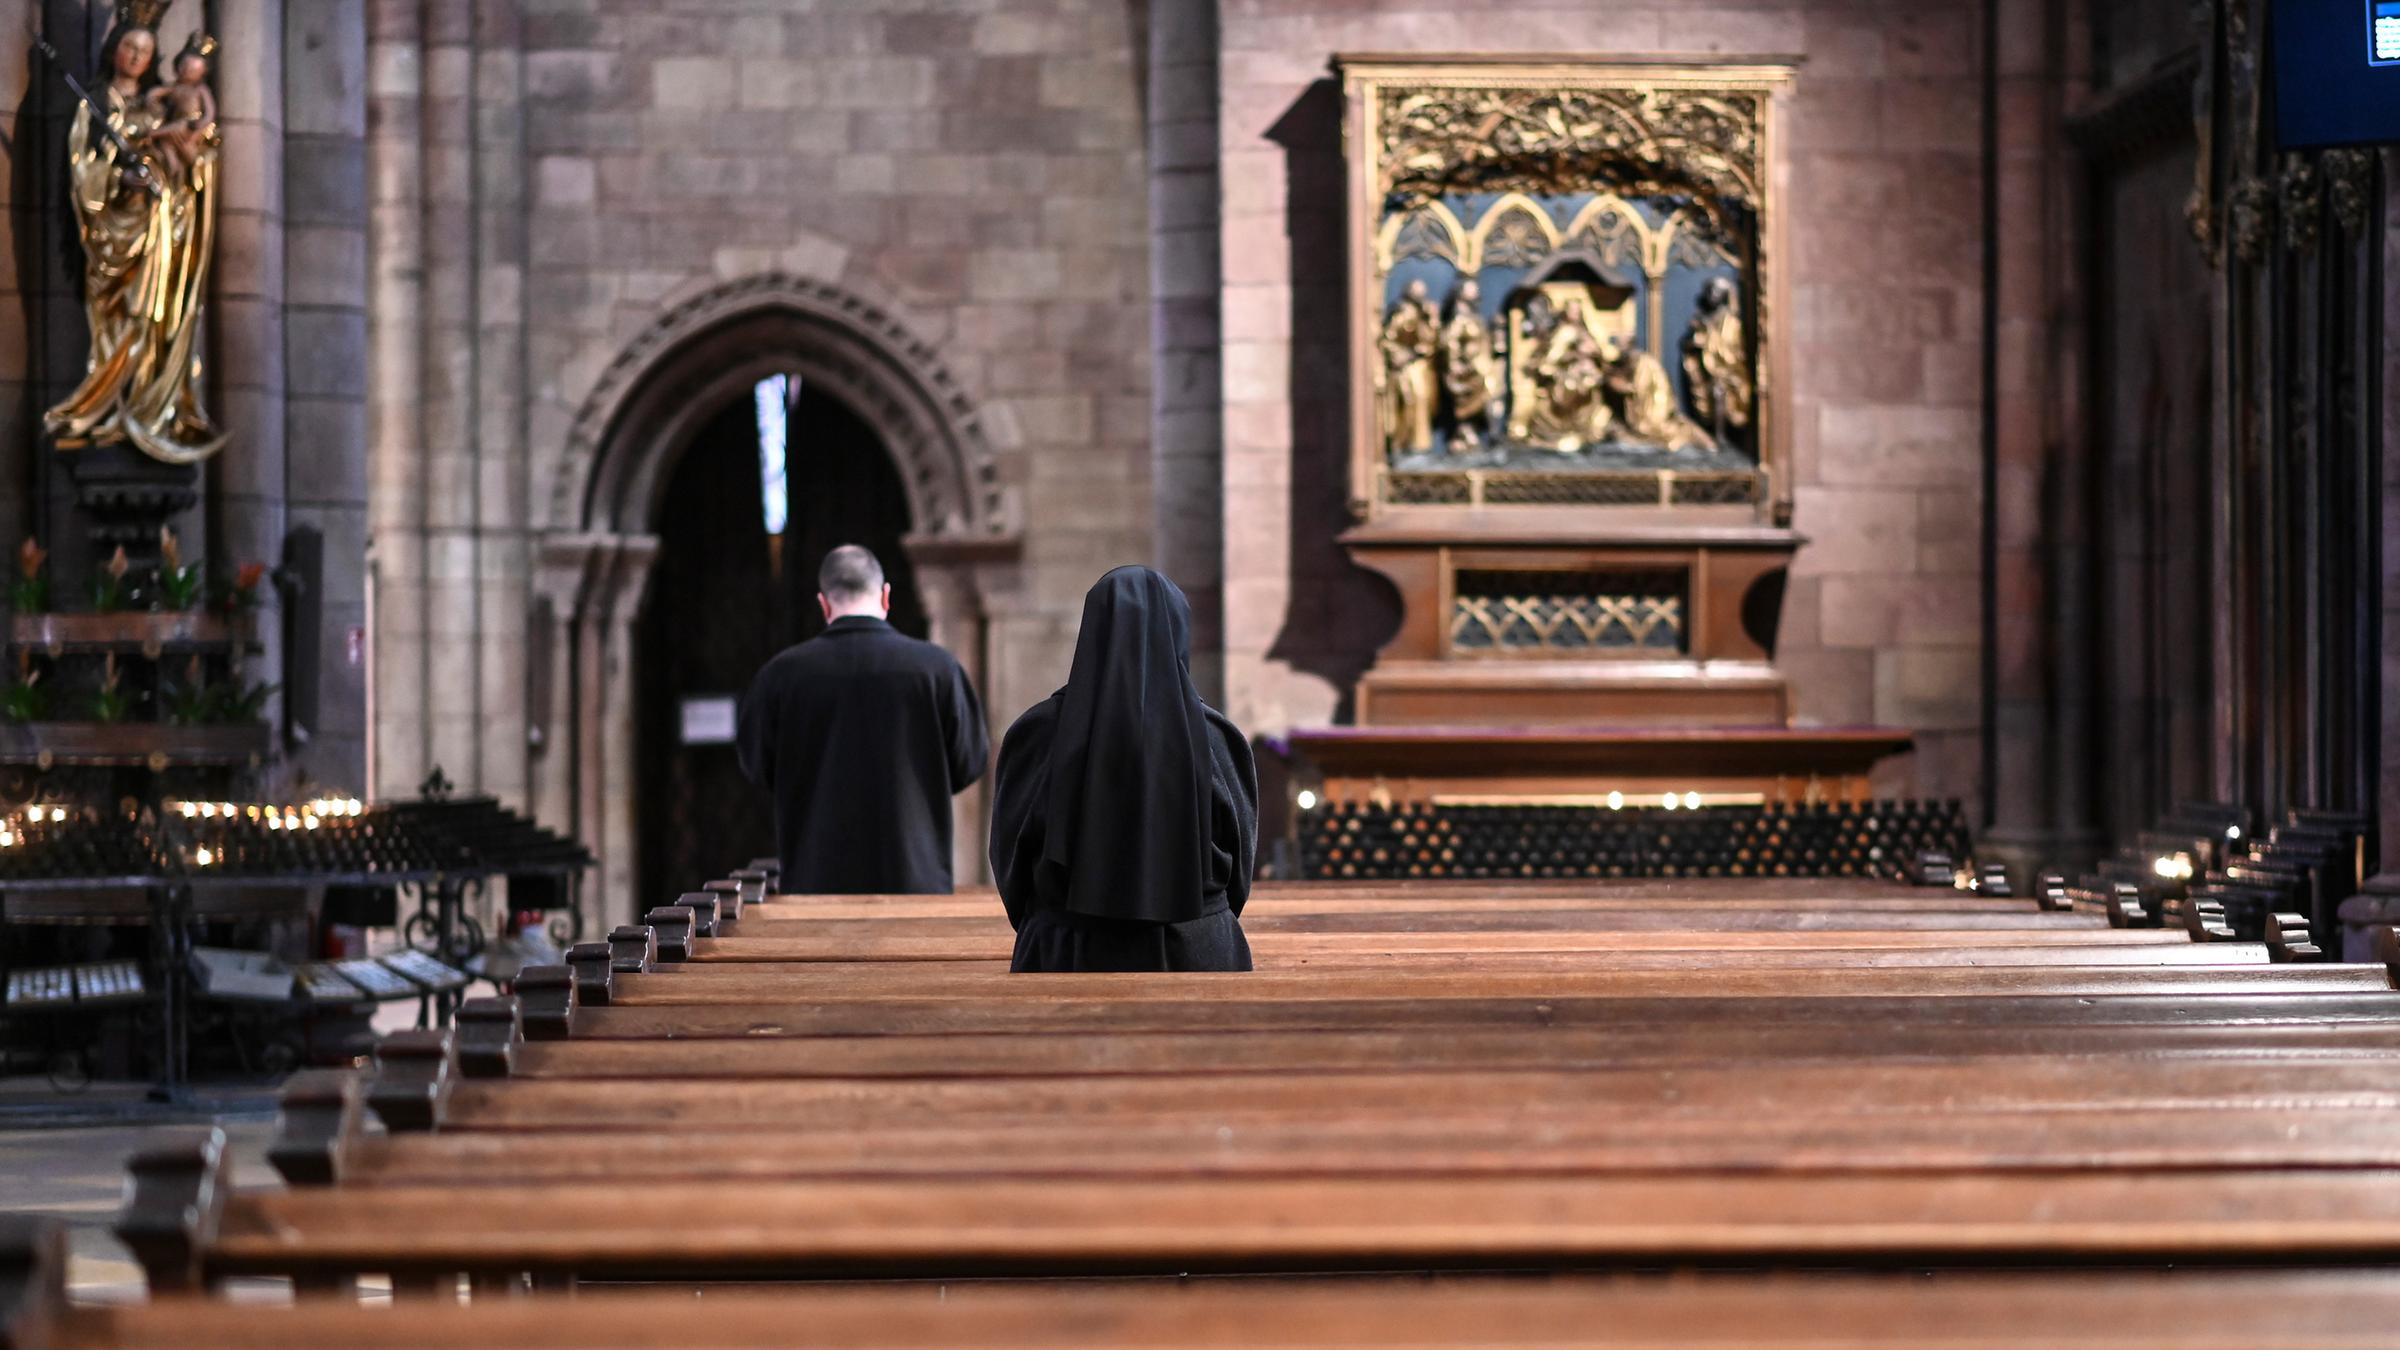 Archiv: Eine Nonne verfolgt den katholischen Gottesdienst im Münster, aufgenommen am 15.03.2020